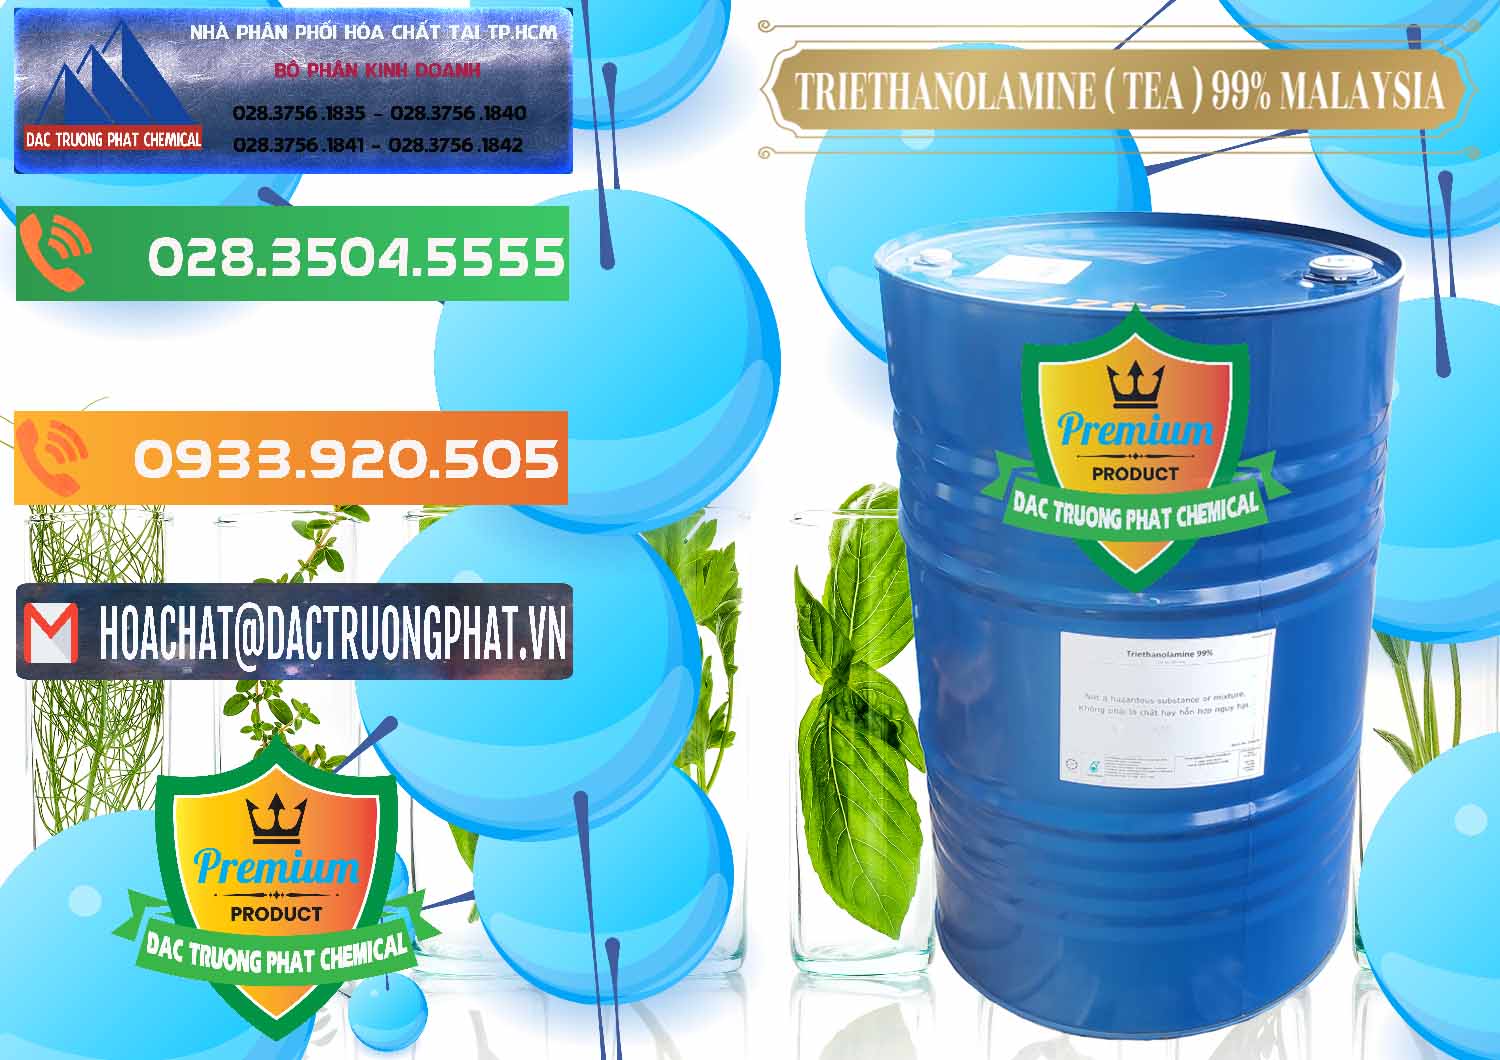 Cty chuyên cung cấp ( bán ) TEA - Triethanolamine 99% Mã Lai Malaysia - 0323 - Nơi chuyên nhập khẩu & phân phối hóa chất tại TP.HCM - hoachatxulynuoc.com.vn